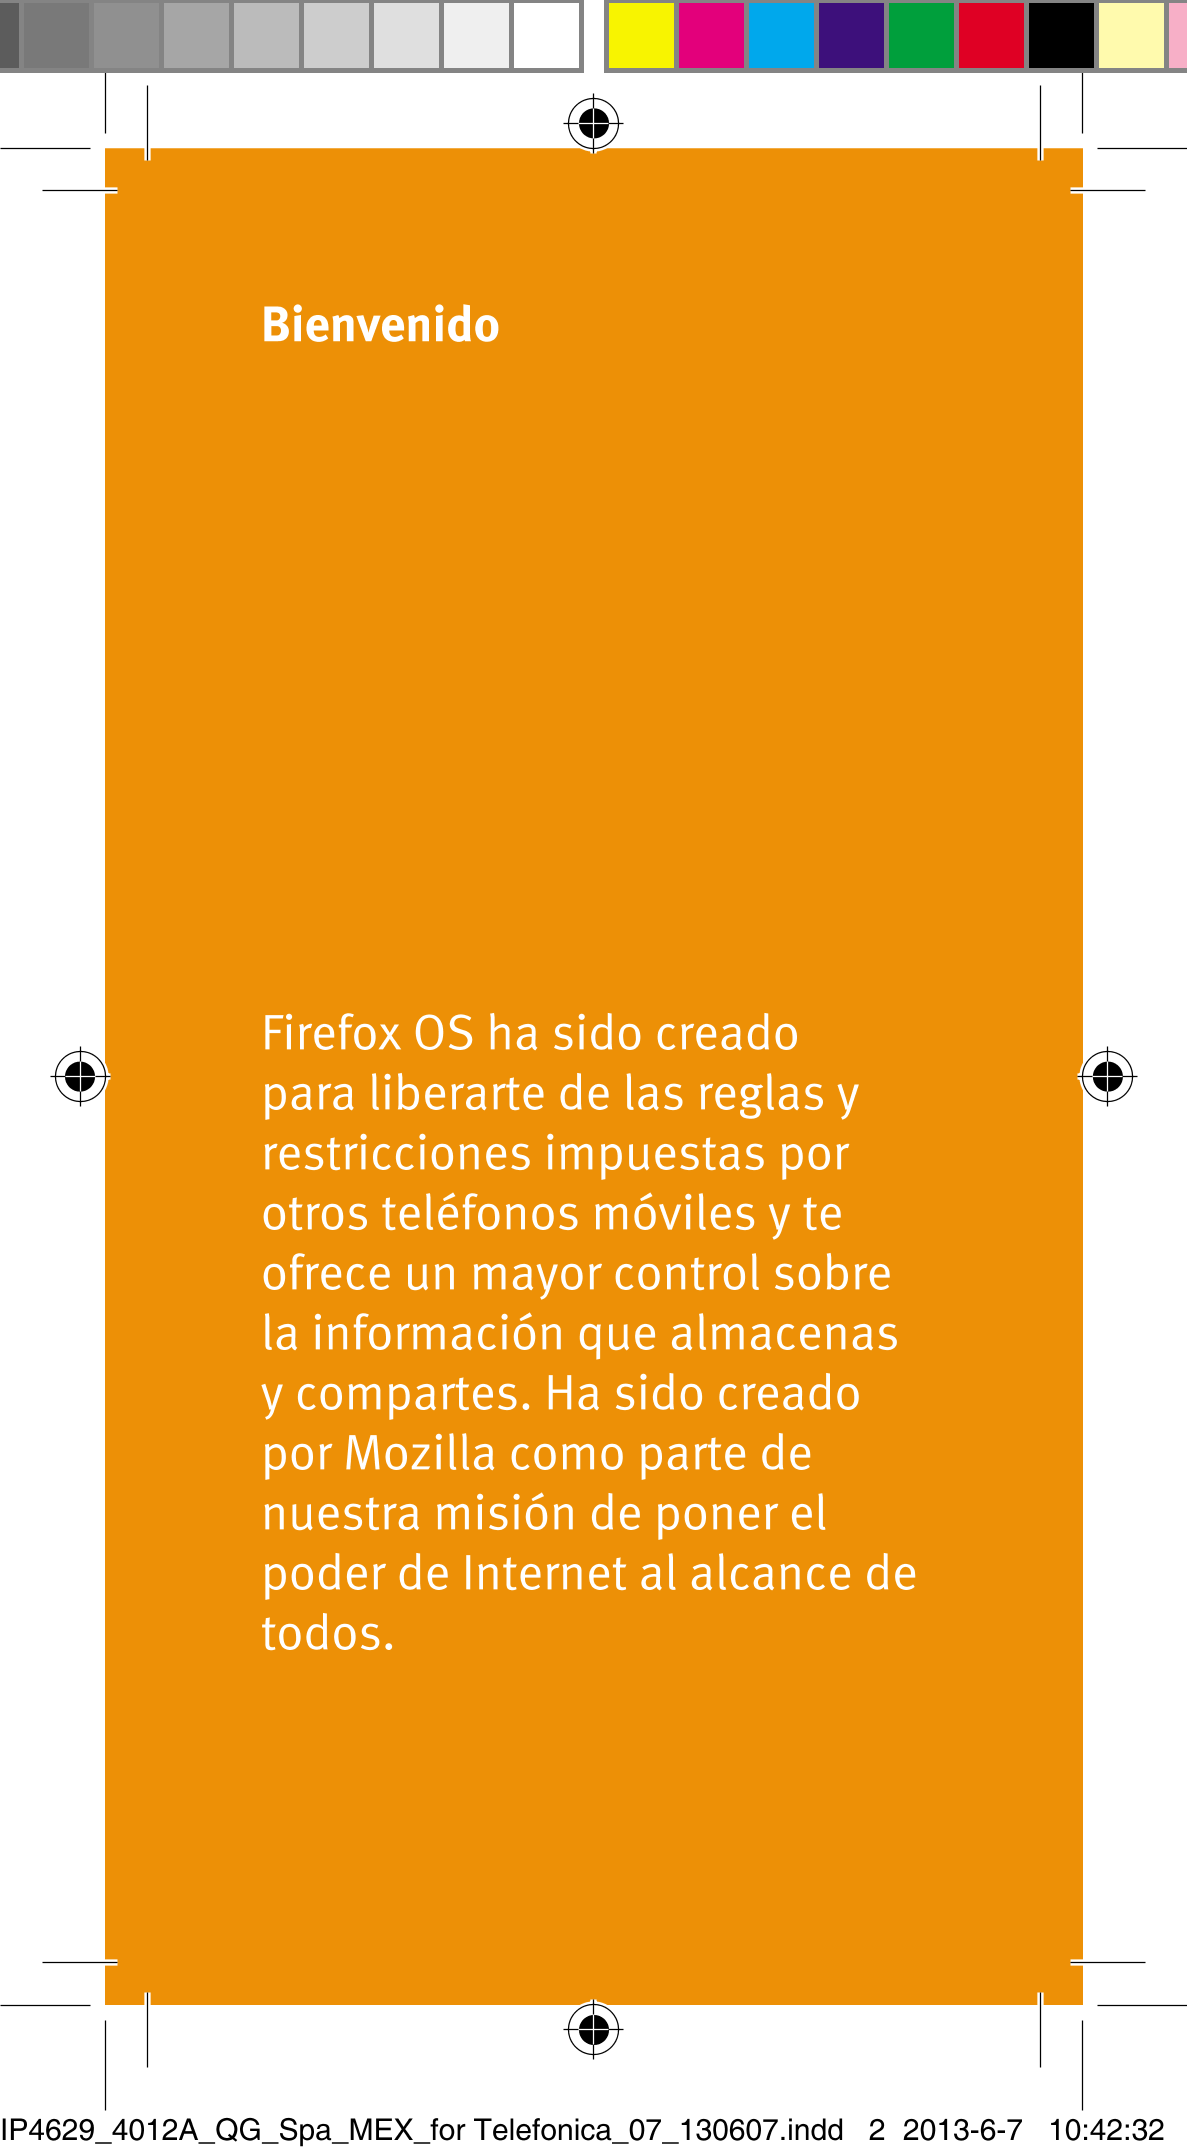 Bienvenido
Firefox OS ha sido creado 
para liberarte de las reglas y 
restricciones impuestas por 
otros teléfonos móviles y te 